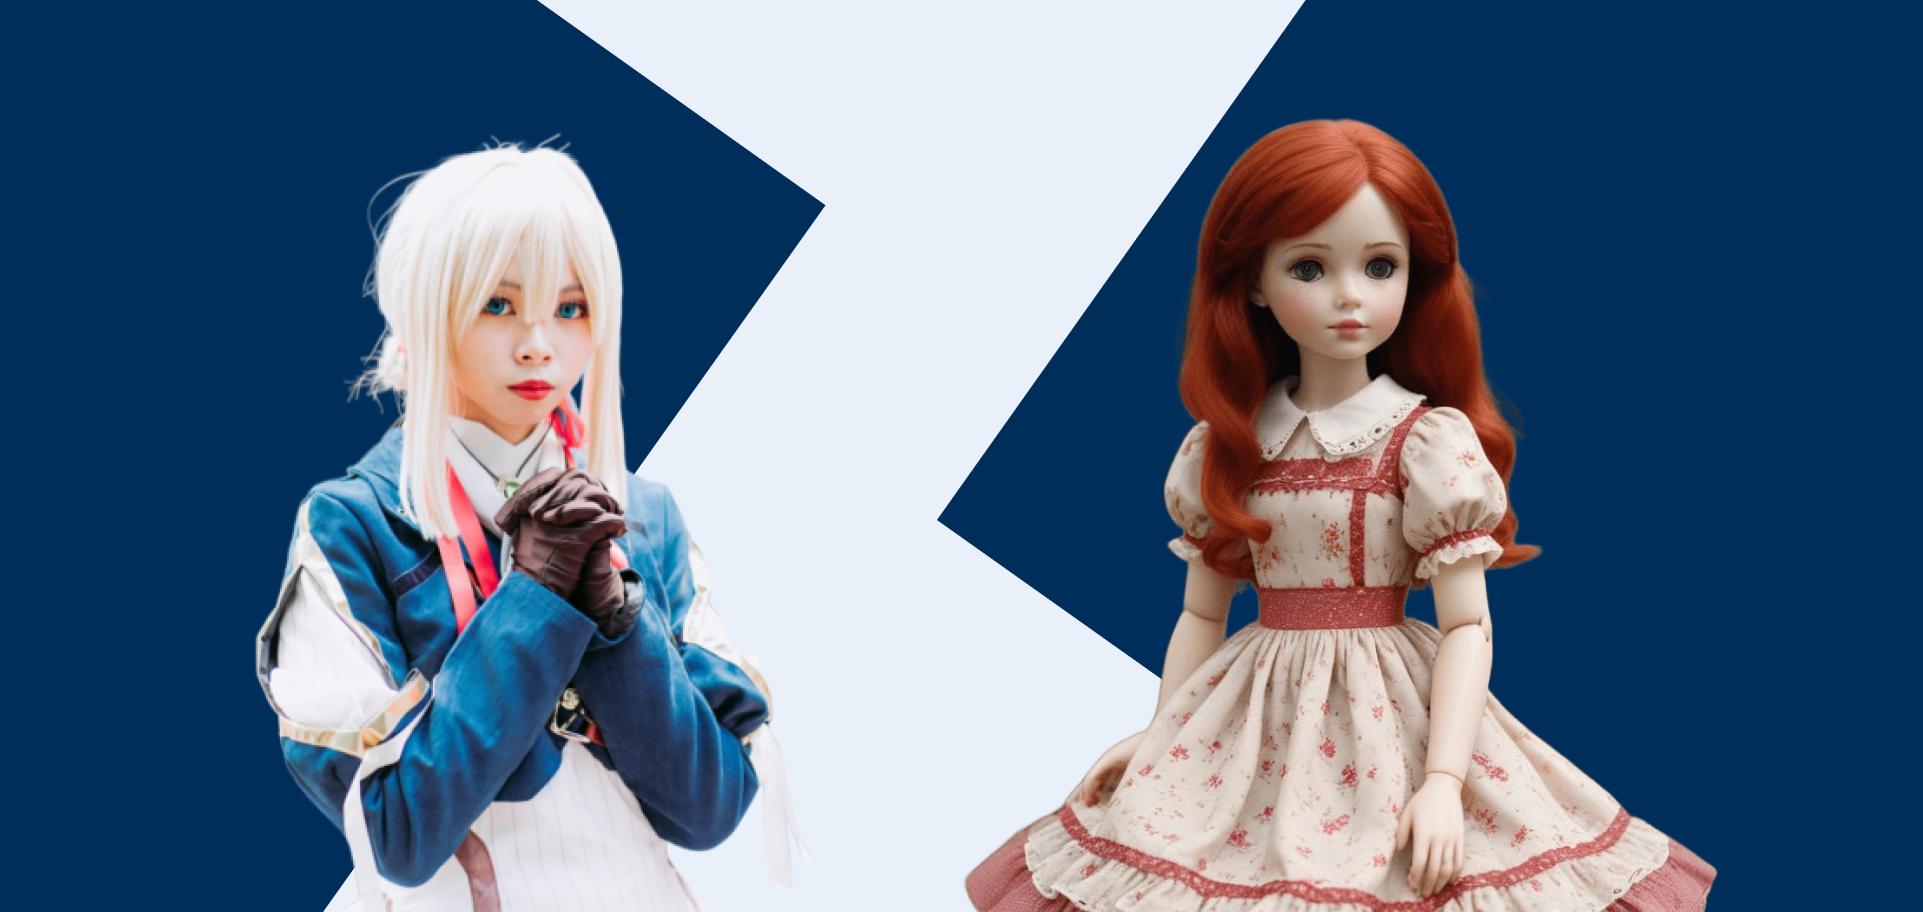 Товары для косплея и куклы ручной работы как хит продаж на Etsy — успейте к сезону